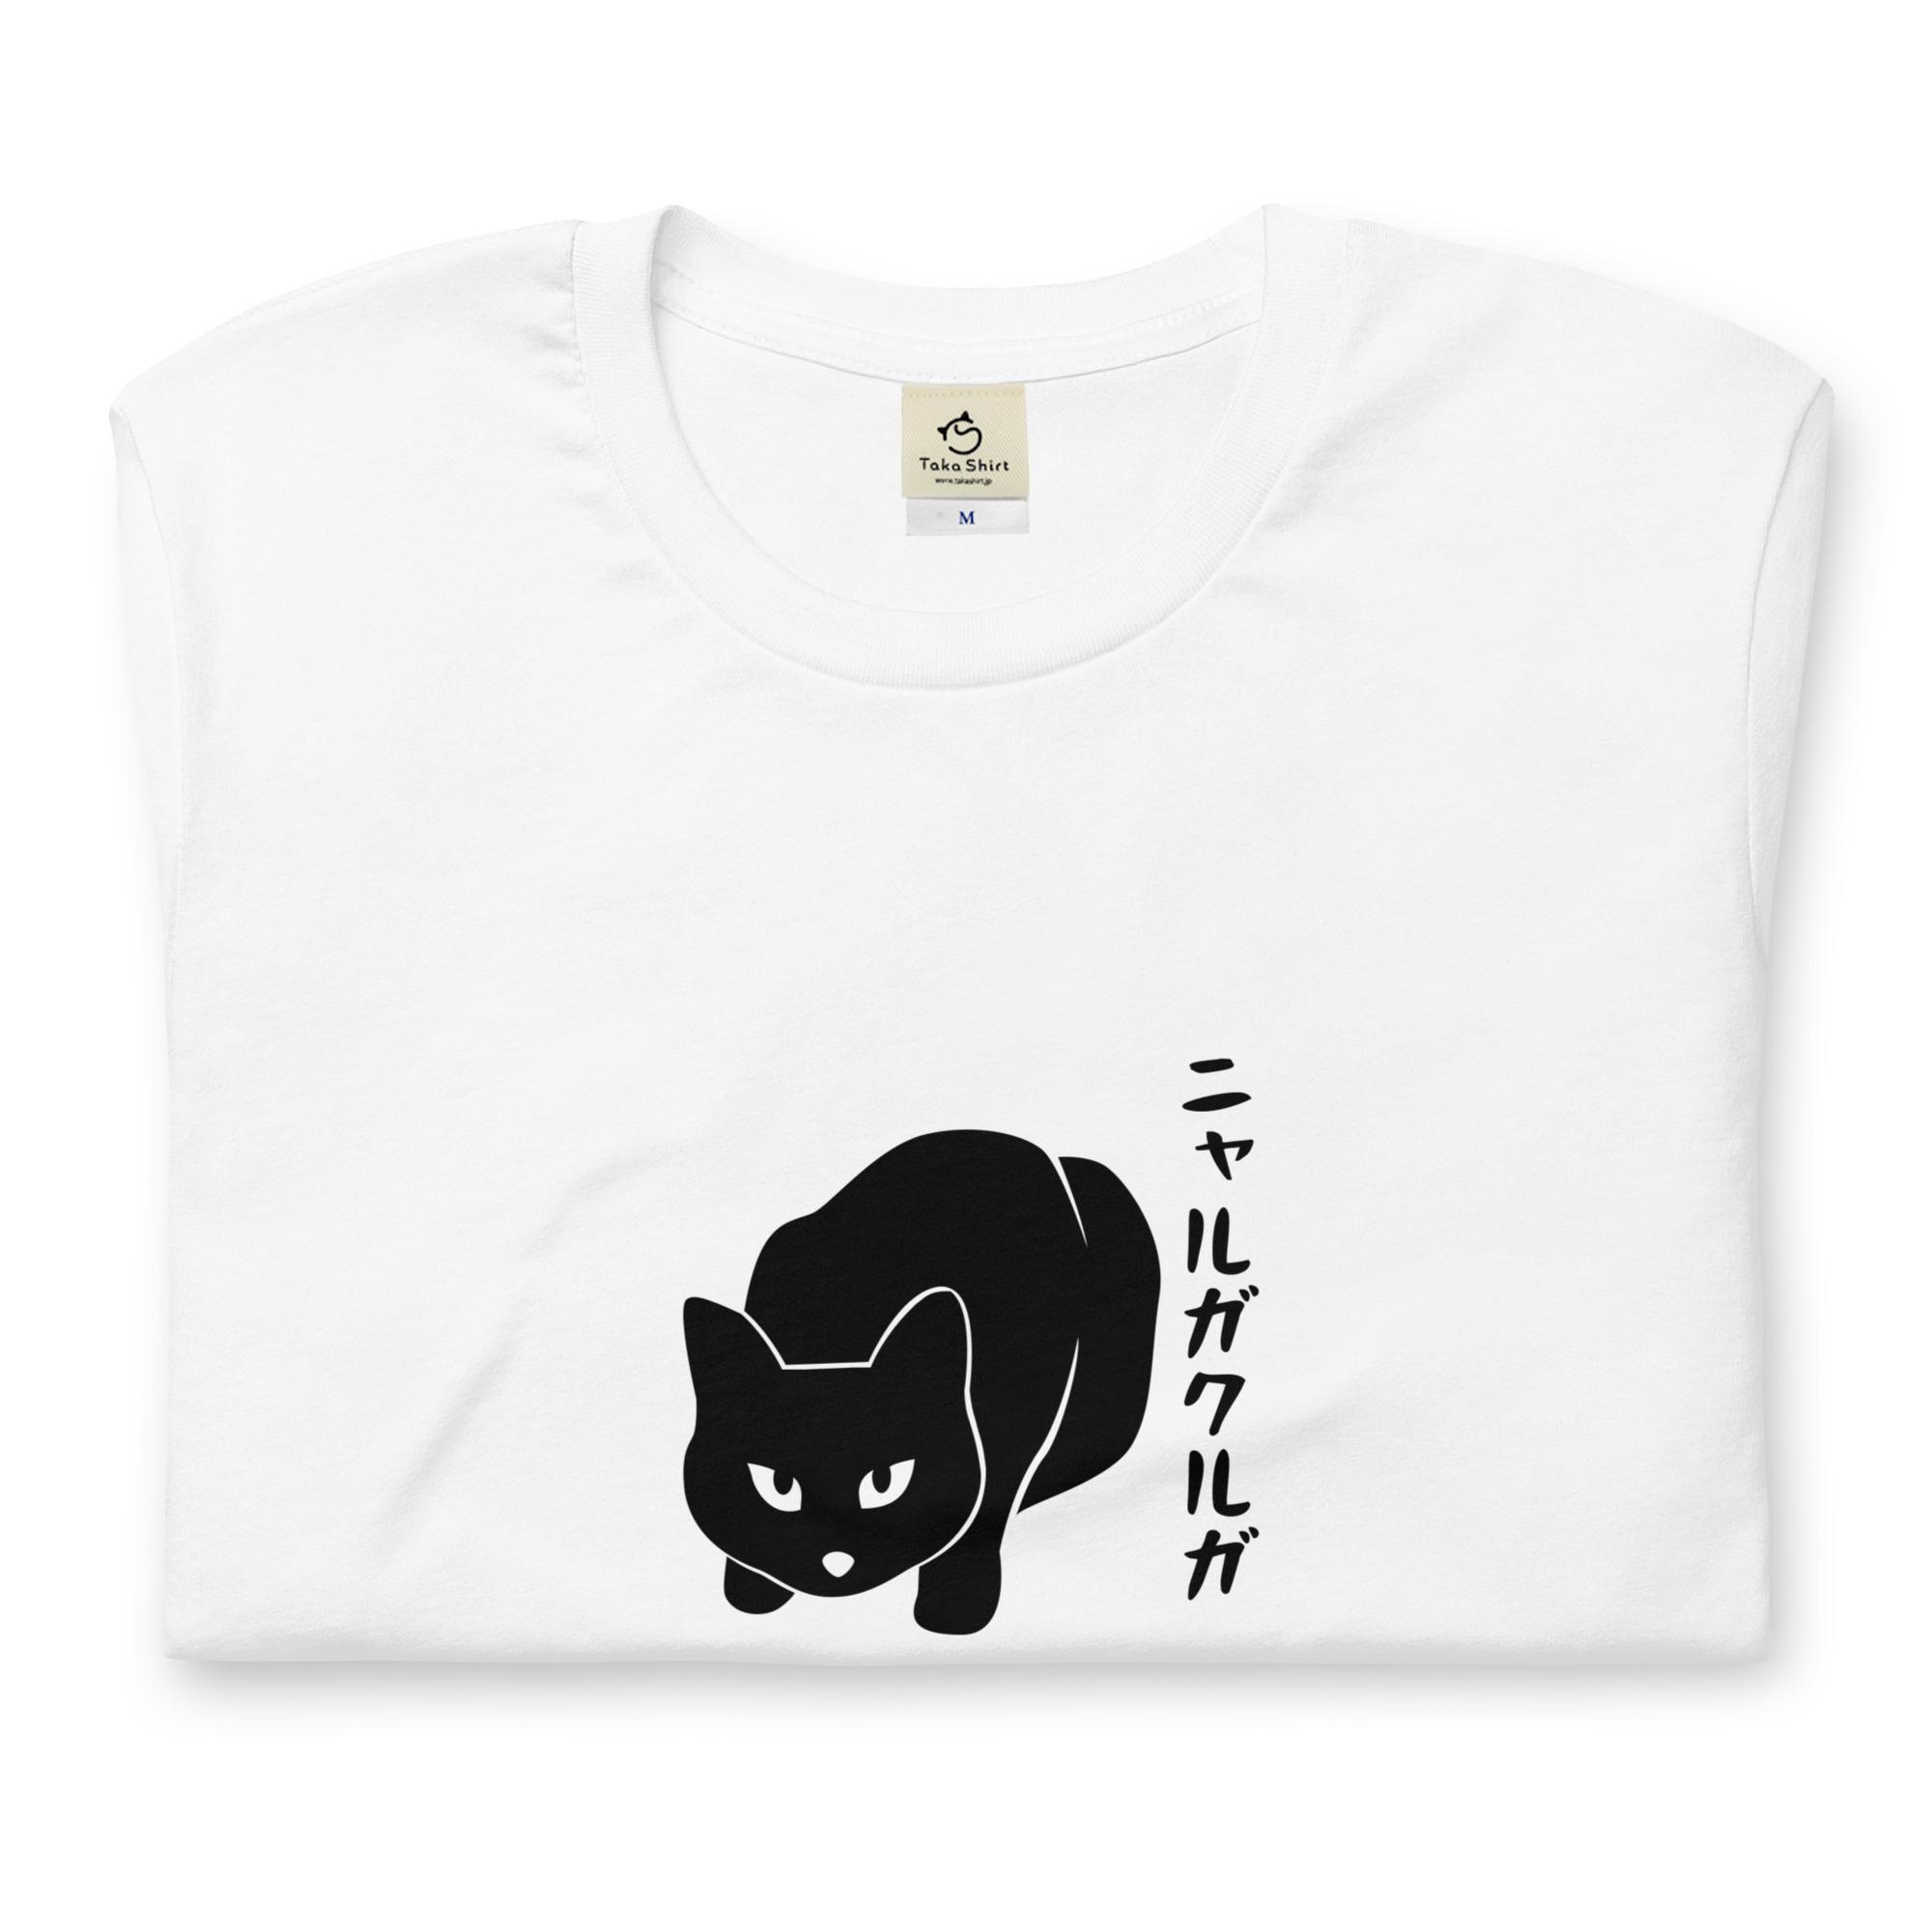 楽天Takashirtニャルガクルガ 猫tシャツ 猫グッズ ネコ柄 猫柄 服 ねこ柄 シャツ 誕生日プレゼント 彼女 猫好き かわいい おもしろ 可愛い ねこ 猫 メンズ レディース ペアルック おしゃれ